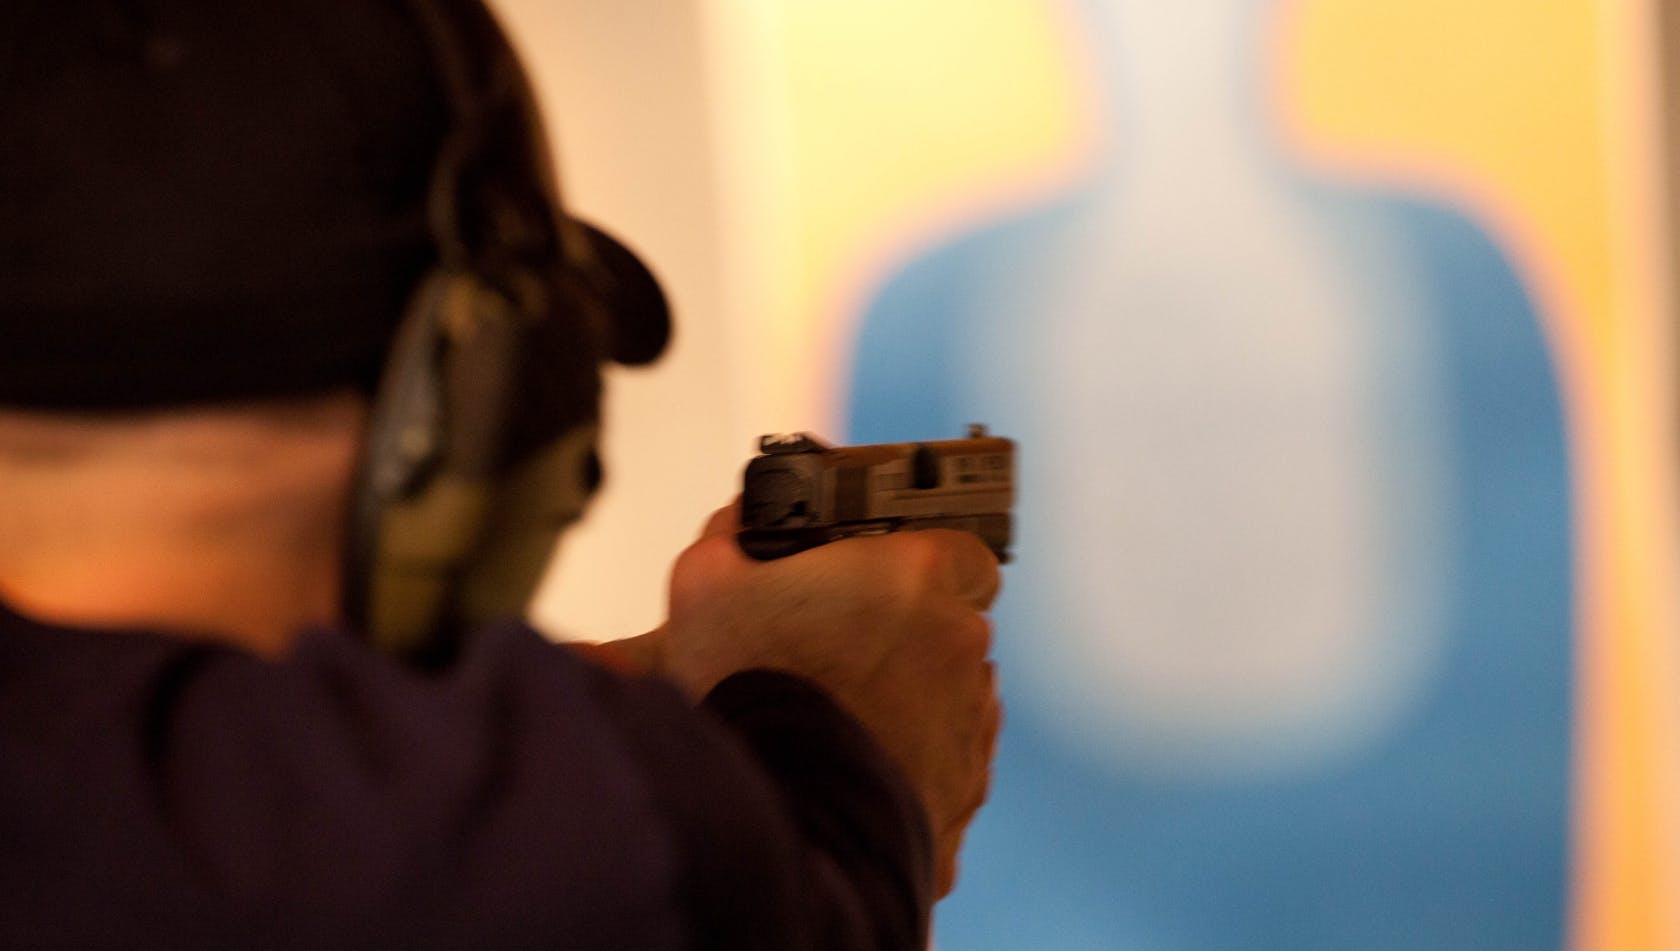 A person aiming a gun at a target